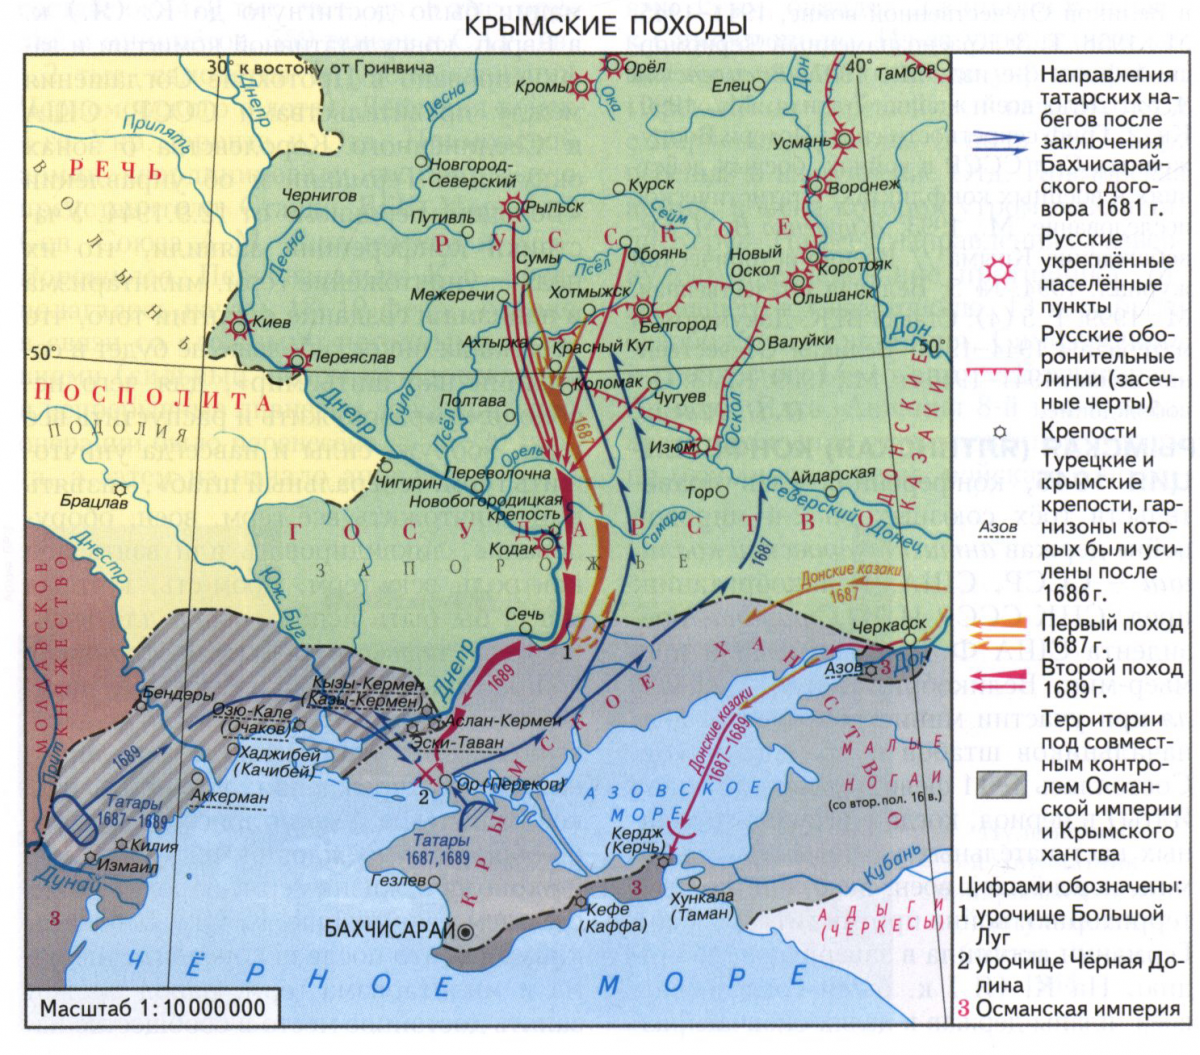 Крымские походы